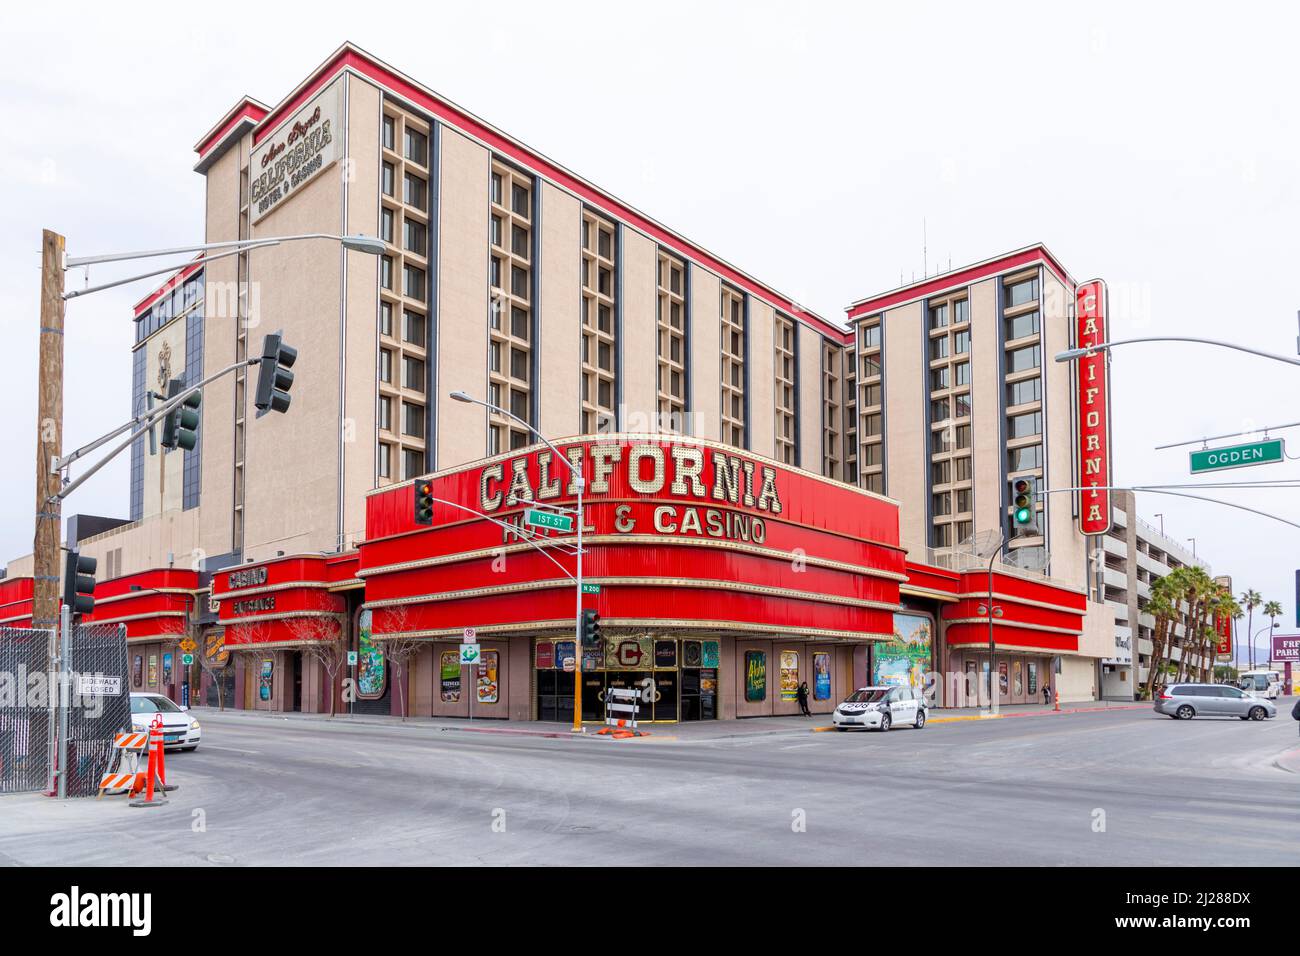 California Hotel & Casino – Las Vegas